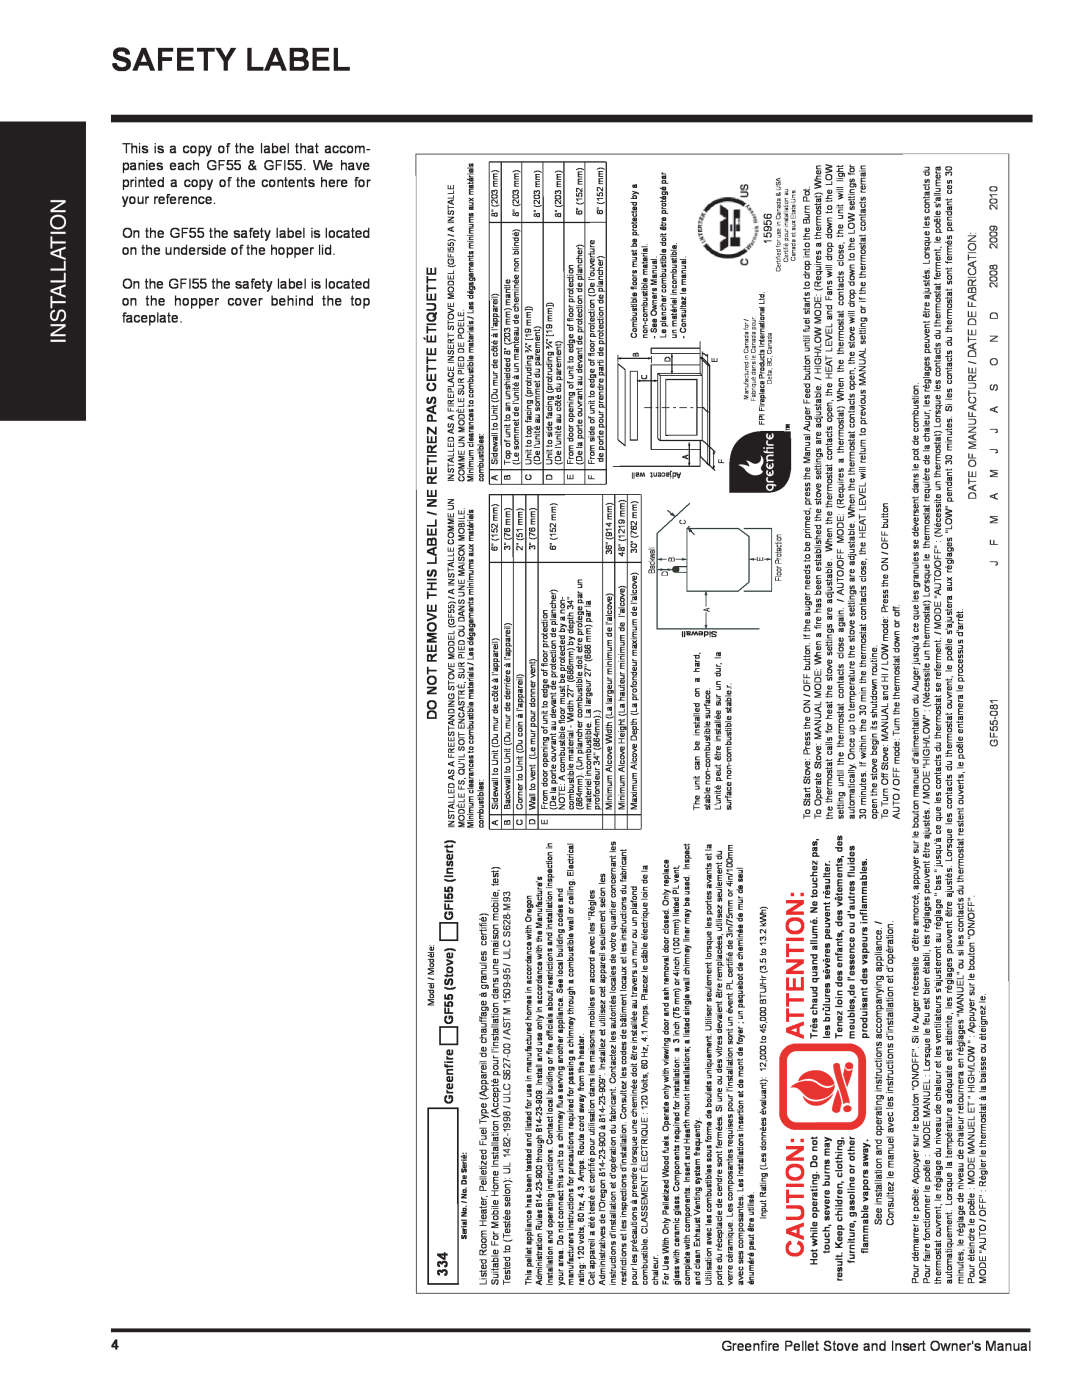 Regency GFI55 owner manual Safety Label, Installation 